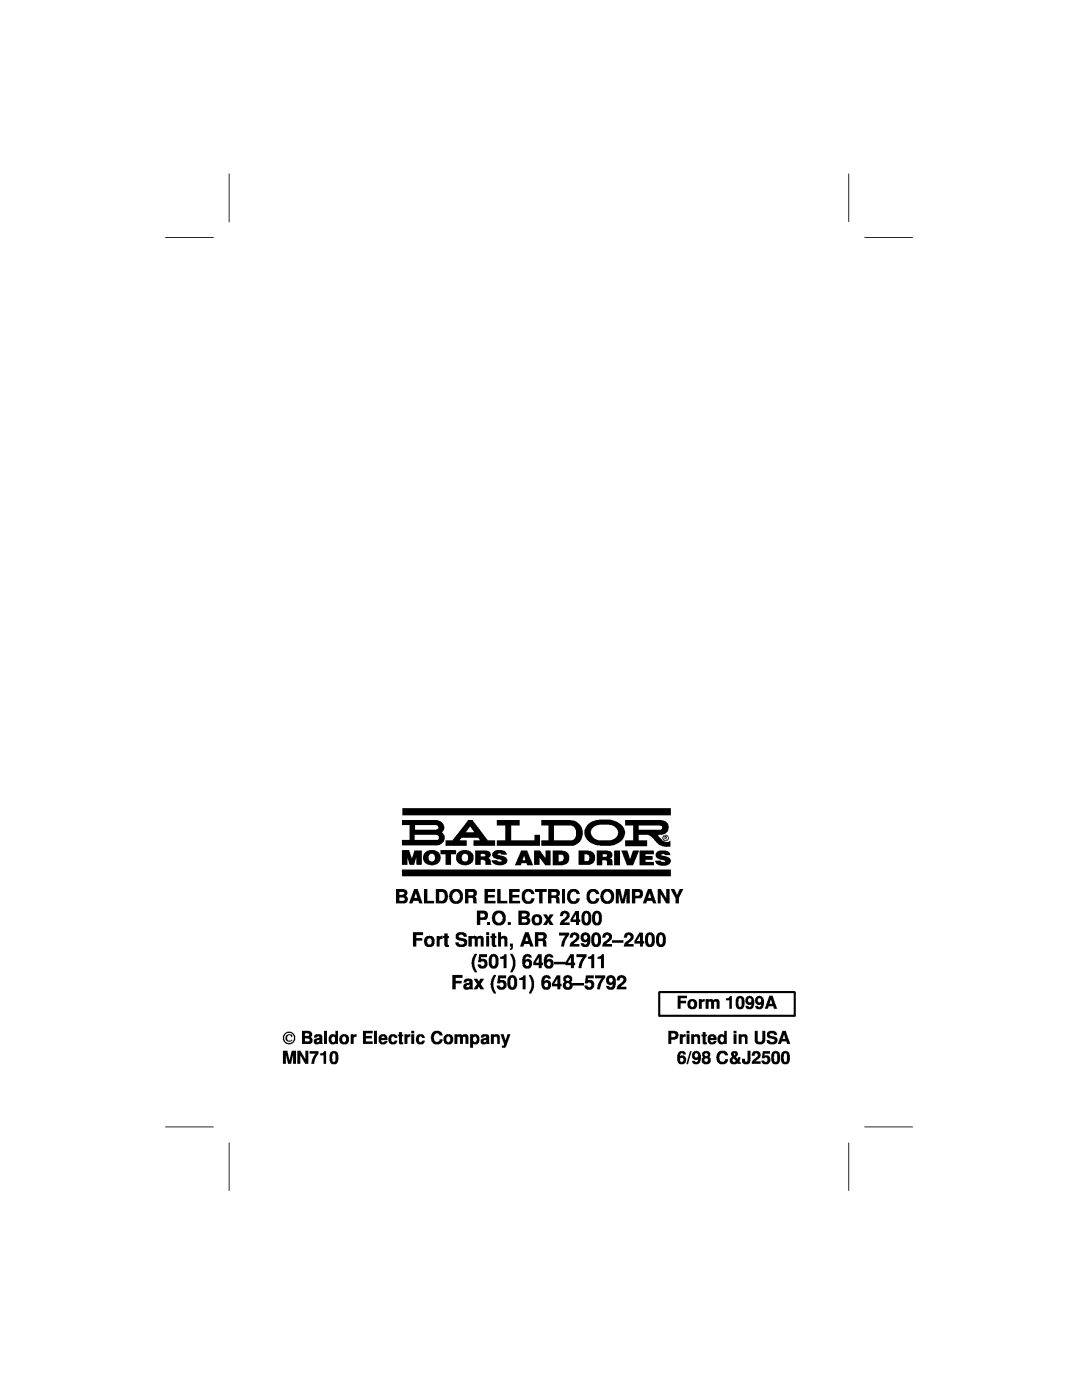 Baldor ID101F50-E BALDOR ELECTRIC COMPANY P.O. Box Fort Smith, AR 72902±2400, 501 646±4711 Fax 501 648±5792, Form 1099A 